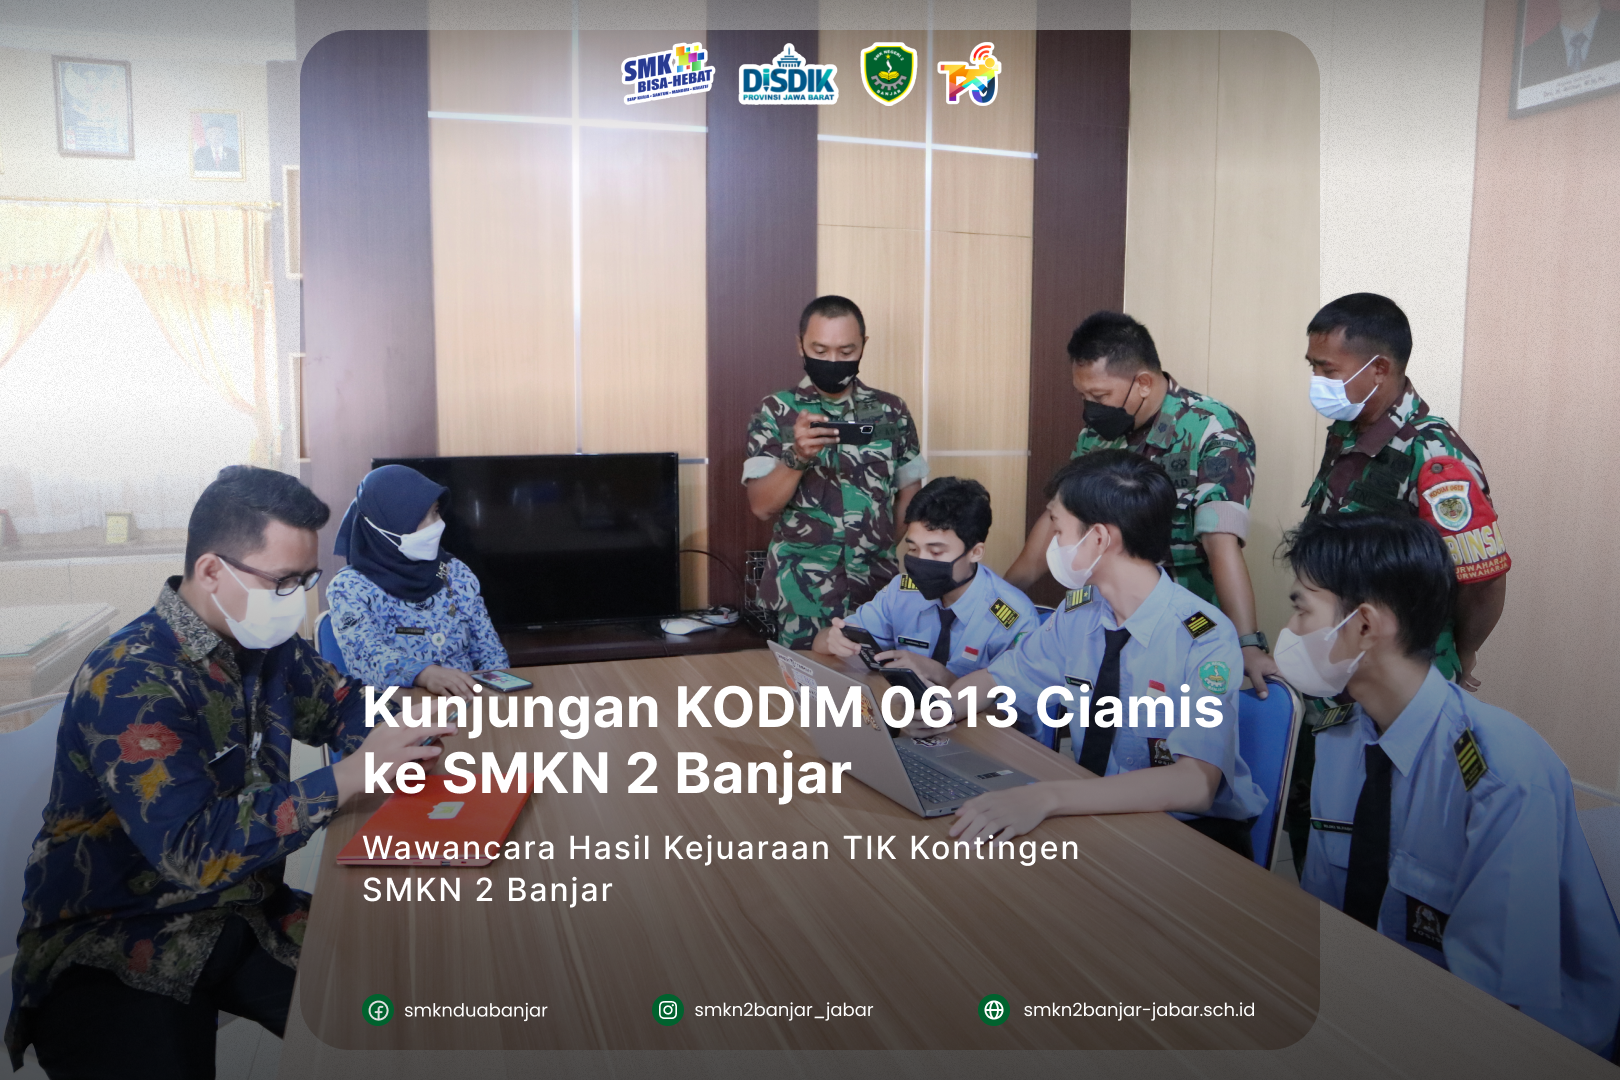 Kunjungan Kodim 0613 (Ciamis) ke SMKN 2 Banjar